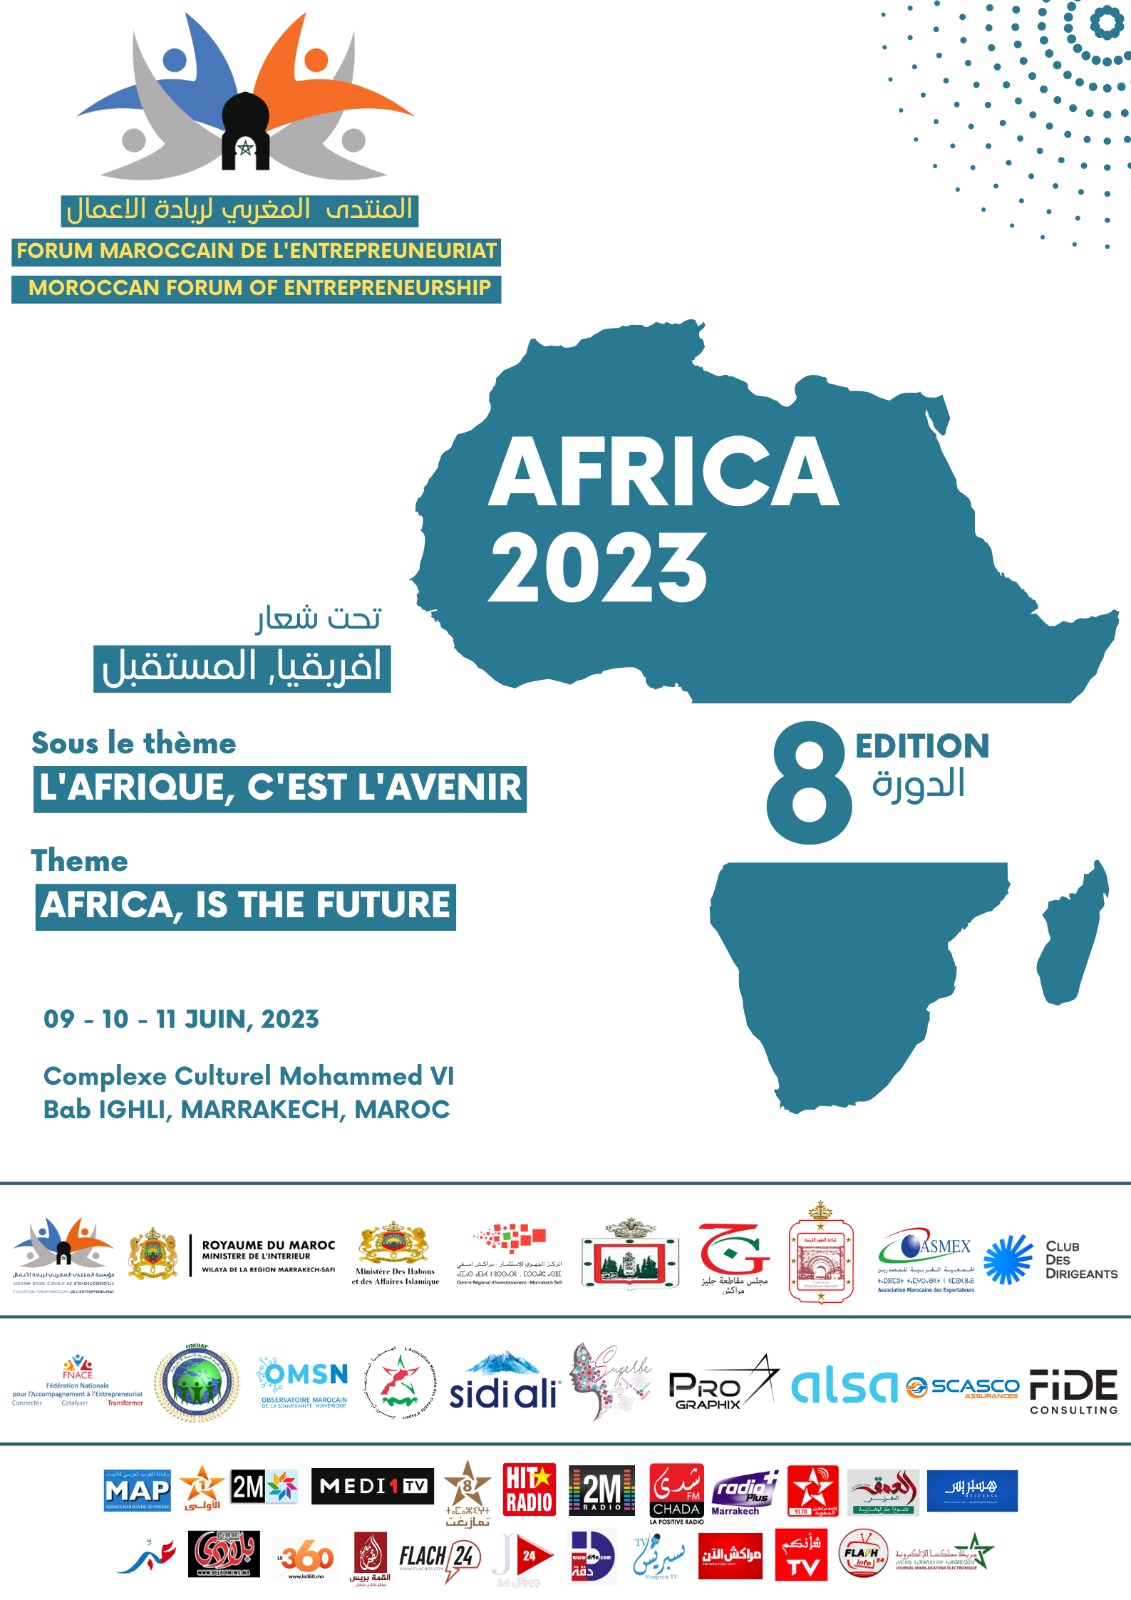 Avec le soutien et l'accompagnement de la commune de Marrakech, le Forum marocain de l'entrepreneuriat sera organisé du 6 au 11 juin 2023 au complexe Mohammed VI à Bab Ighli.